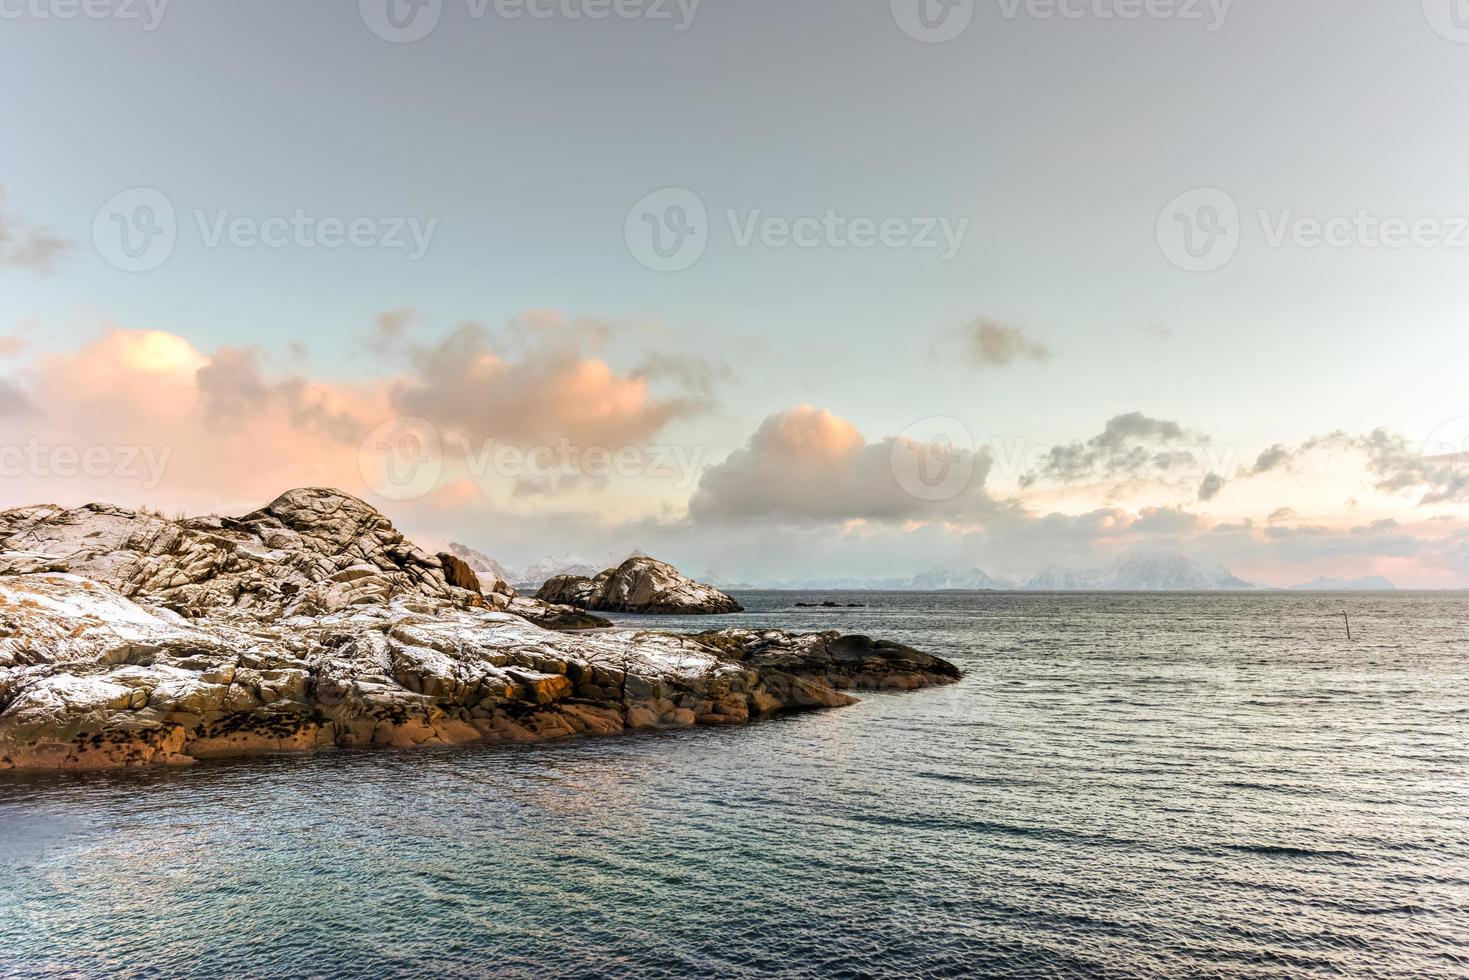 natureza de vestvagoy nas ilhas lofoten, noruega foto